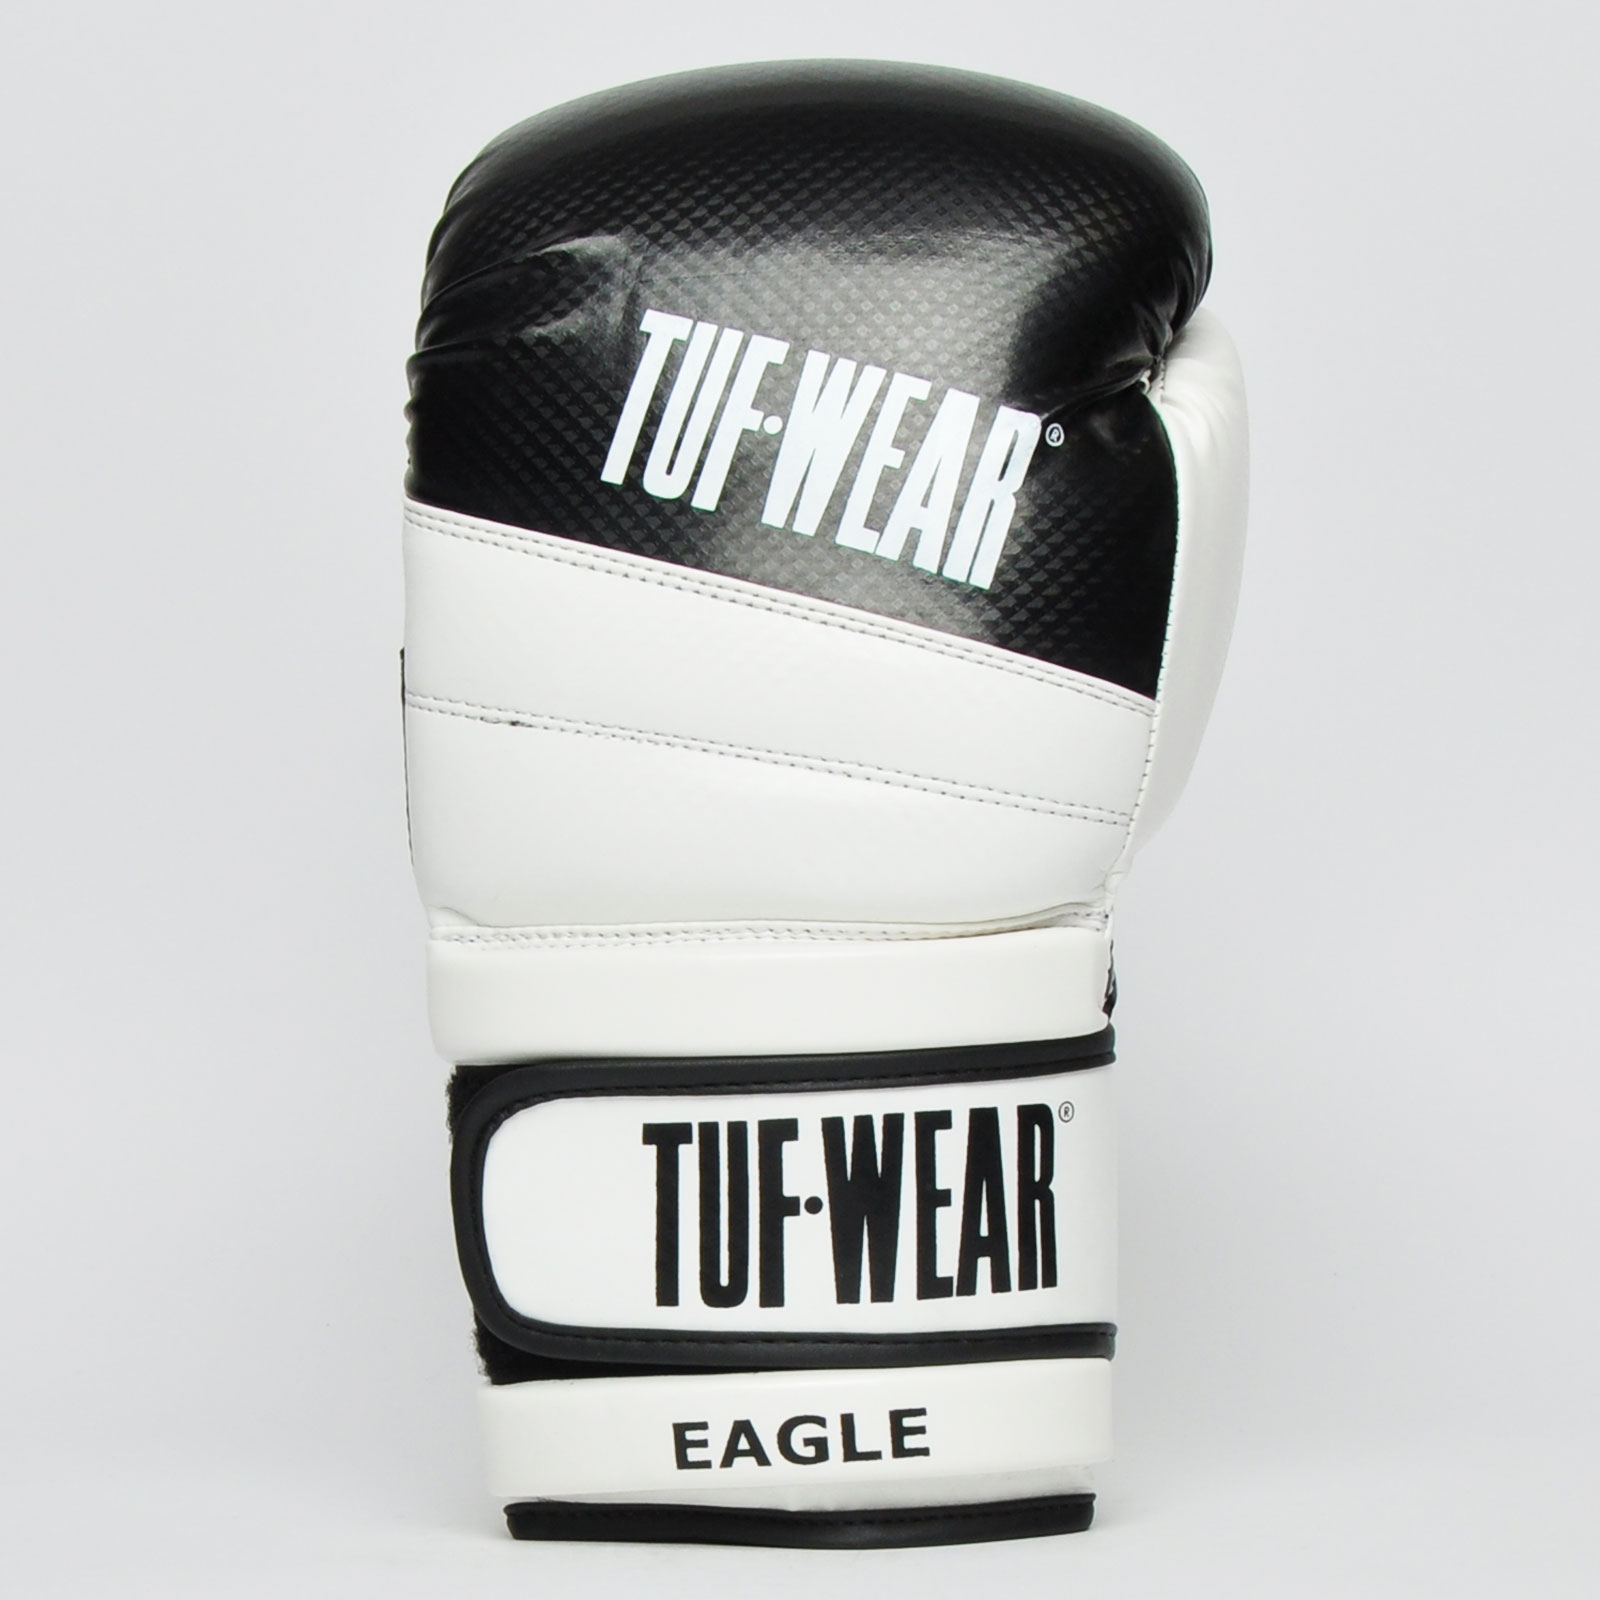 Download Tuf Wear Eagle Training Gloves - Tuf Wear Direct Ltd